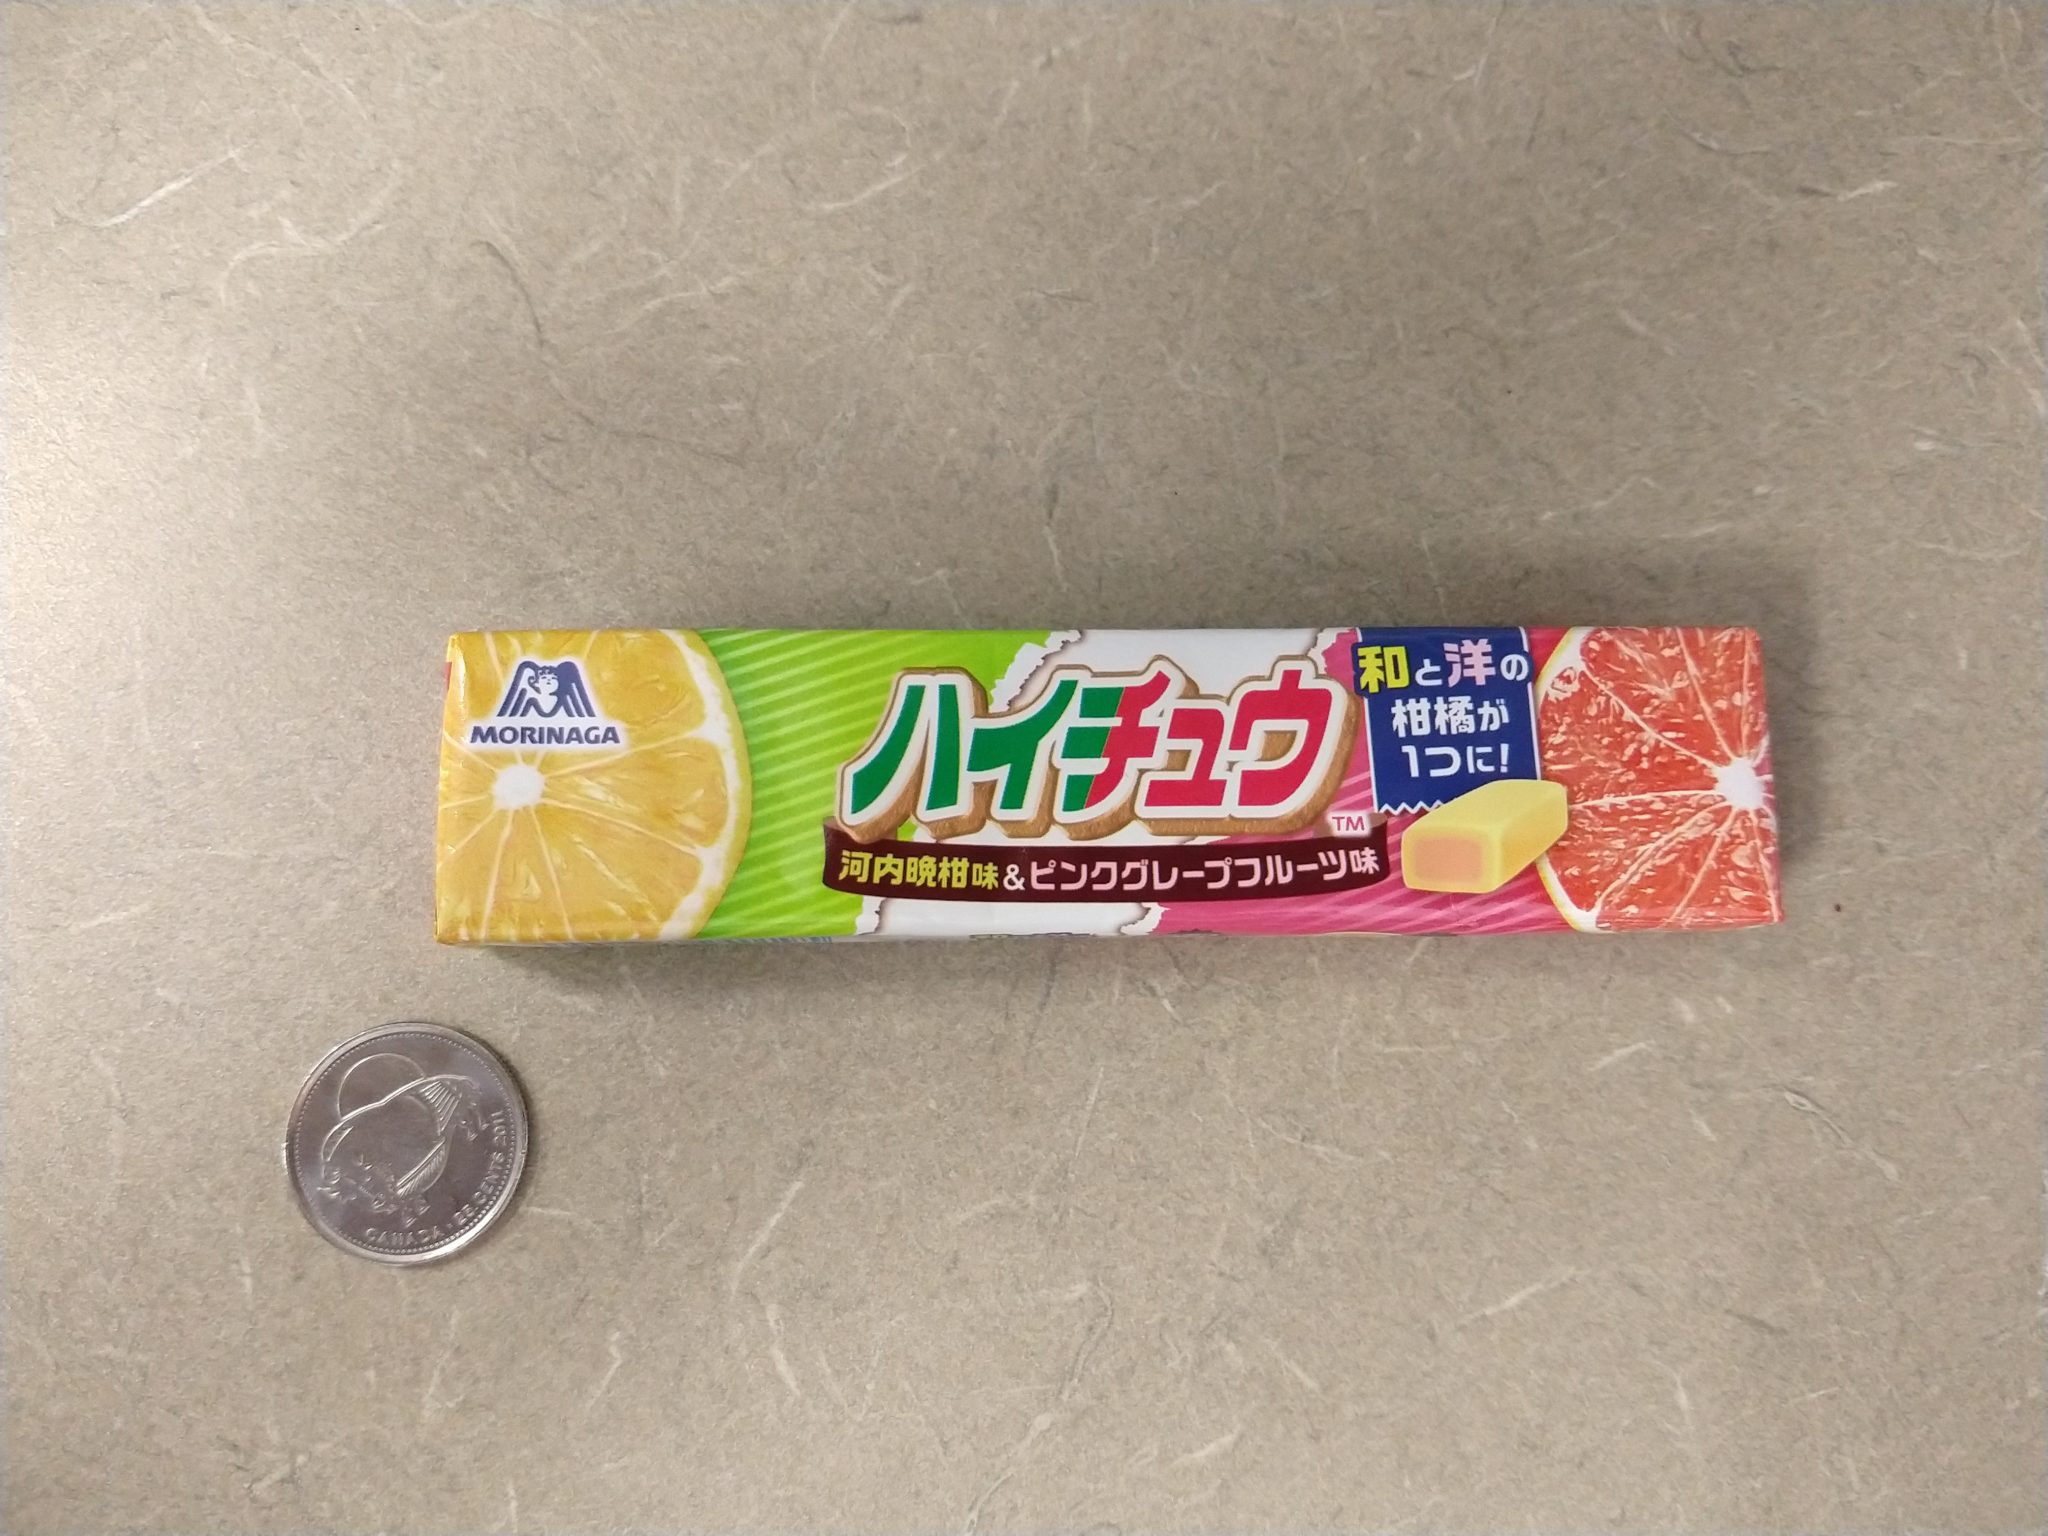 Hi-Chew Doubles – Kawachi Bankan with Grapefruit